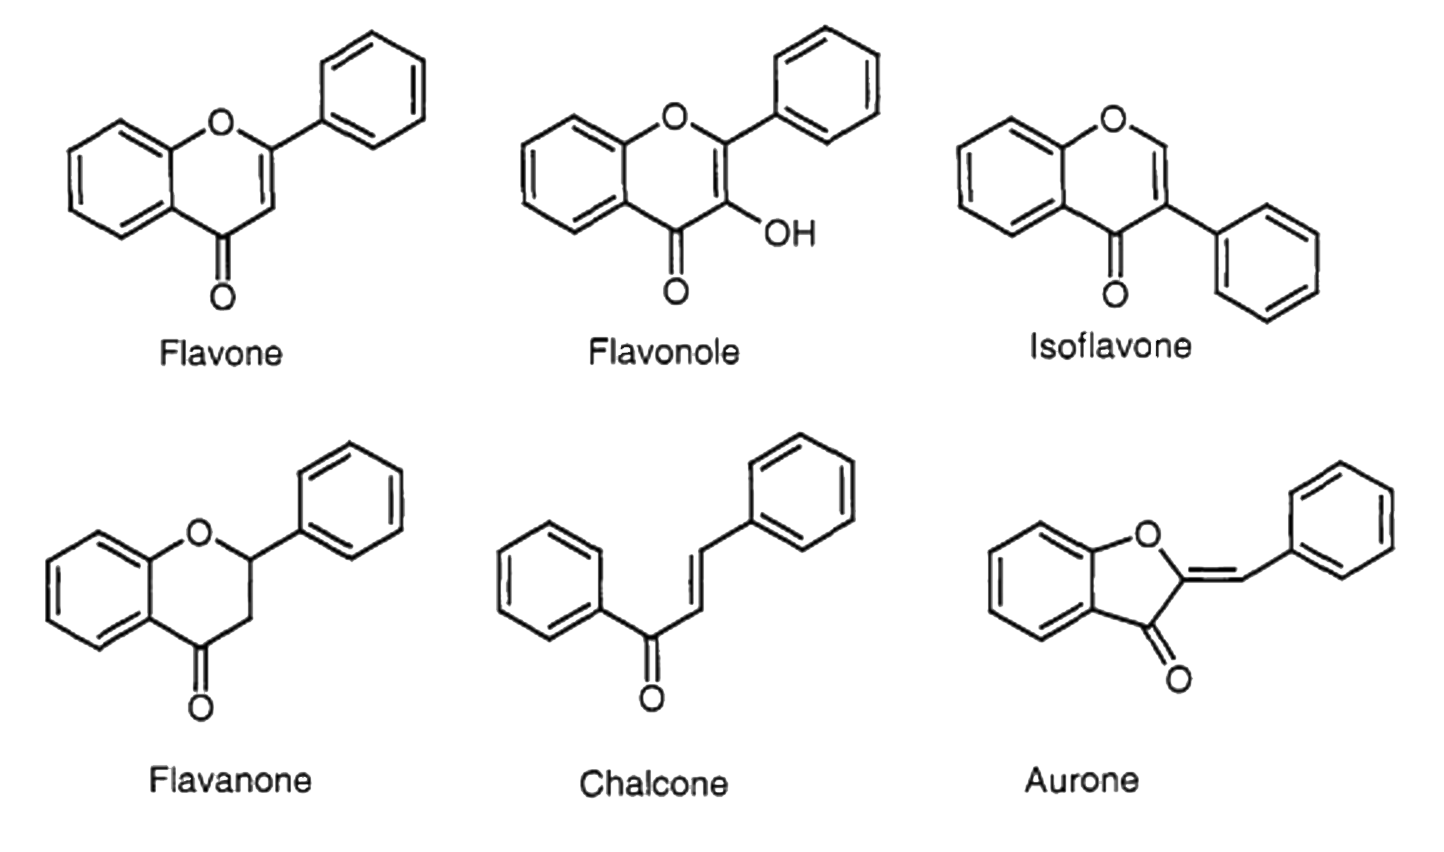 Description: Classification of the flavonoids